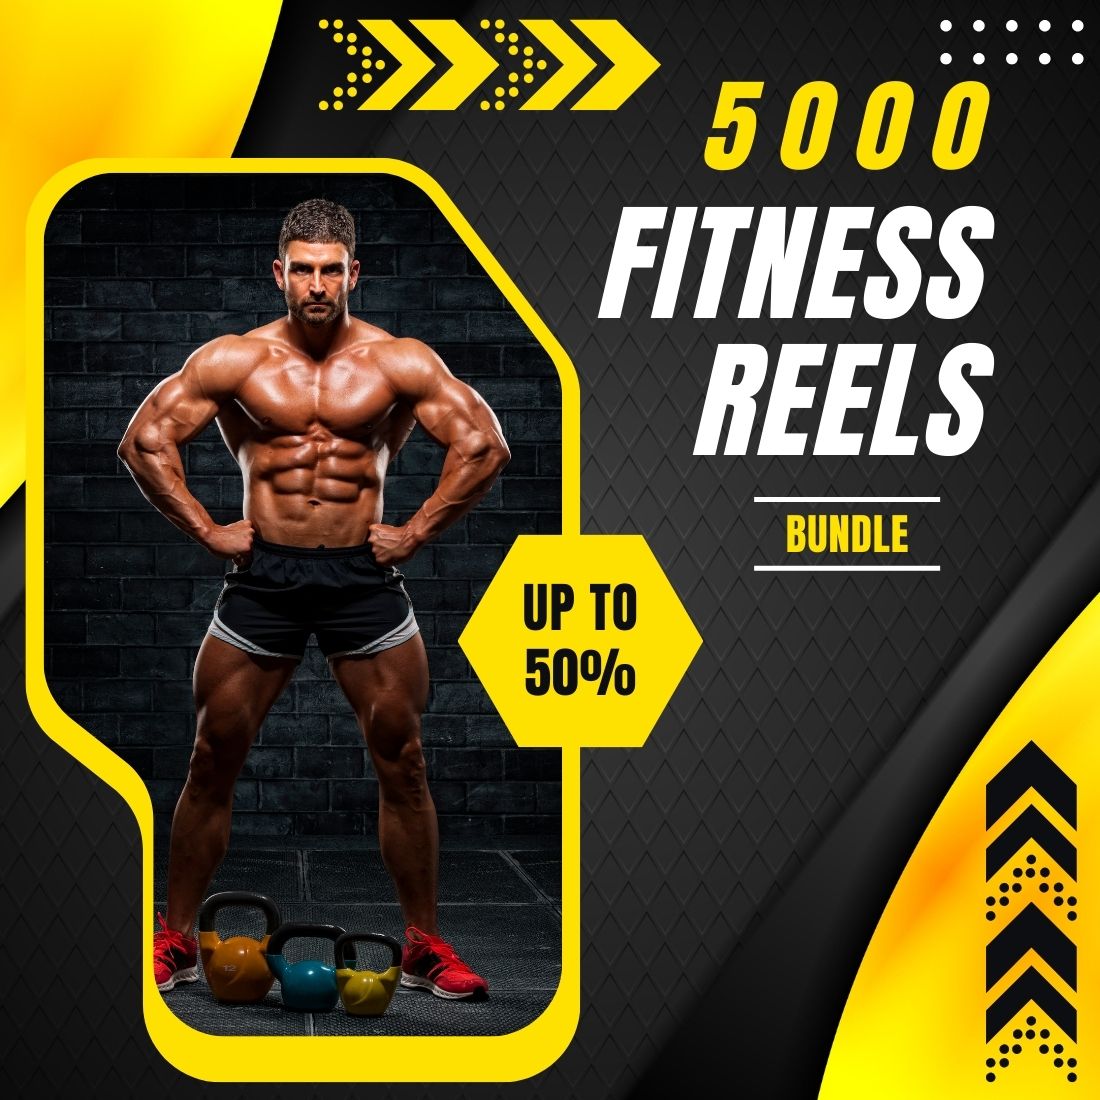 gym reel bundle 5000 reel bundle fitness reel bundle 5000 reel bundle exercise reel bundle 5000 reel bundle 1 294